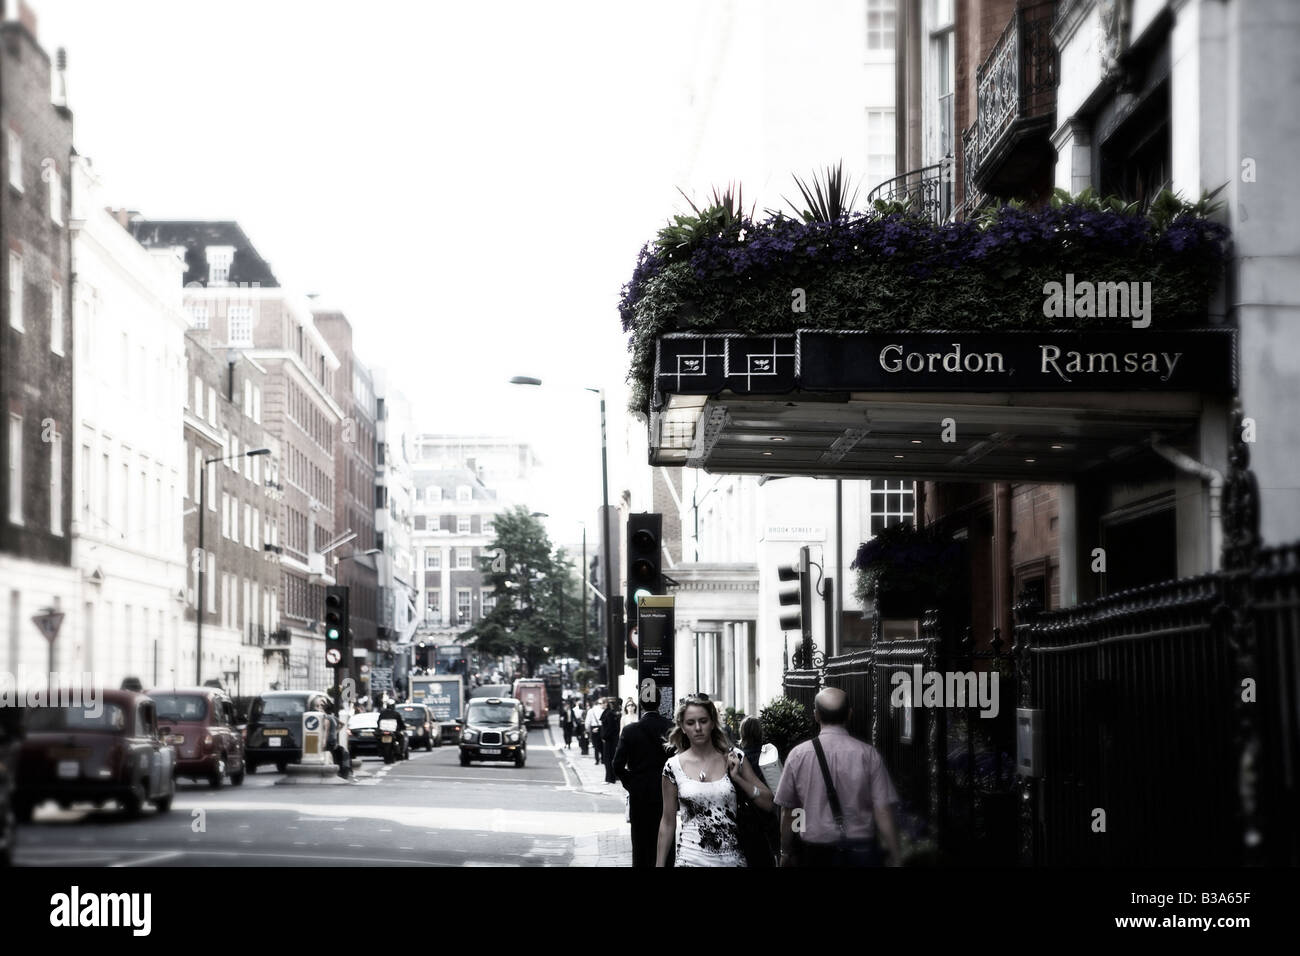 Entrance to Gordon Ramsay's restaurant in London. Stock Photo